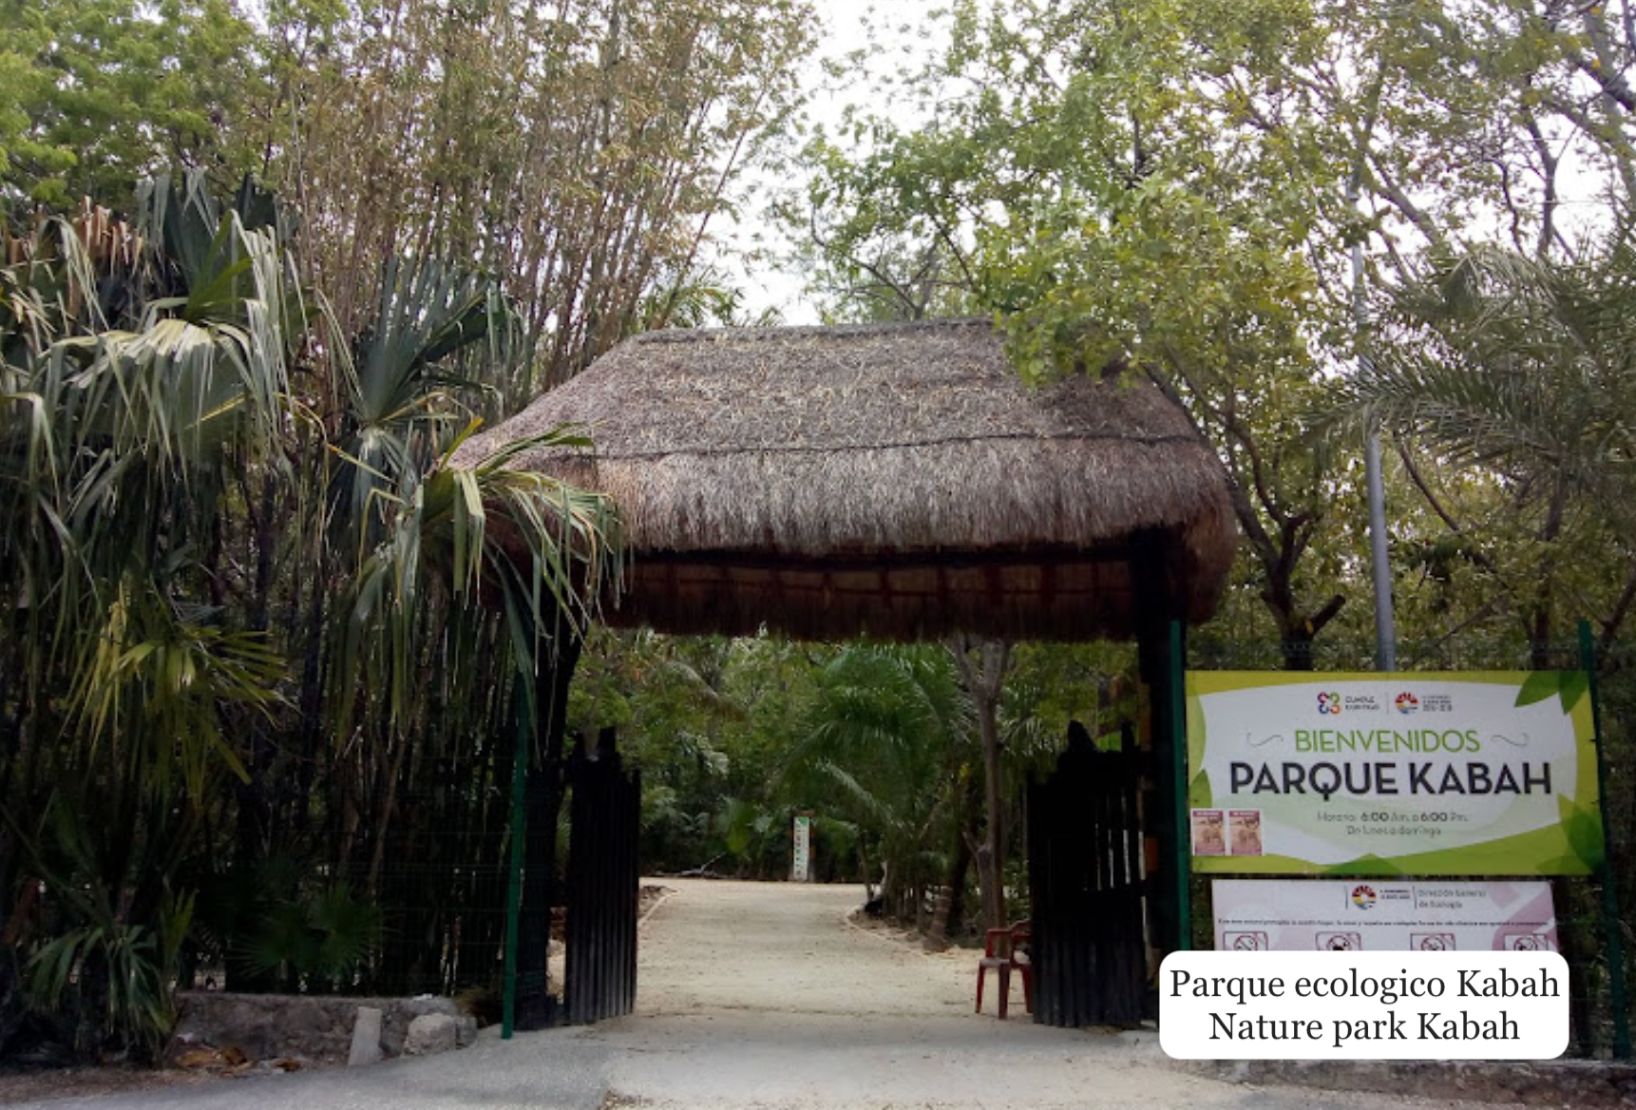 Condominio con Acceso controlado, pet garden, y lago con playa,  pre-construcción, venta, Cancun.